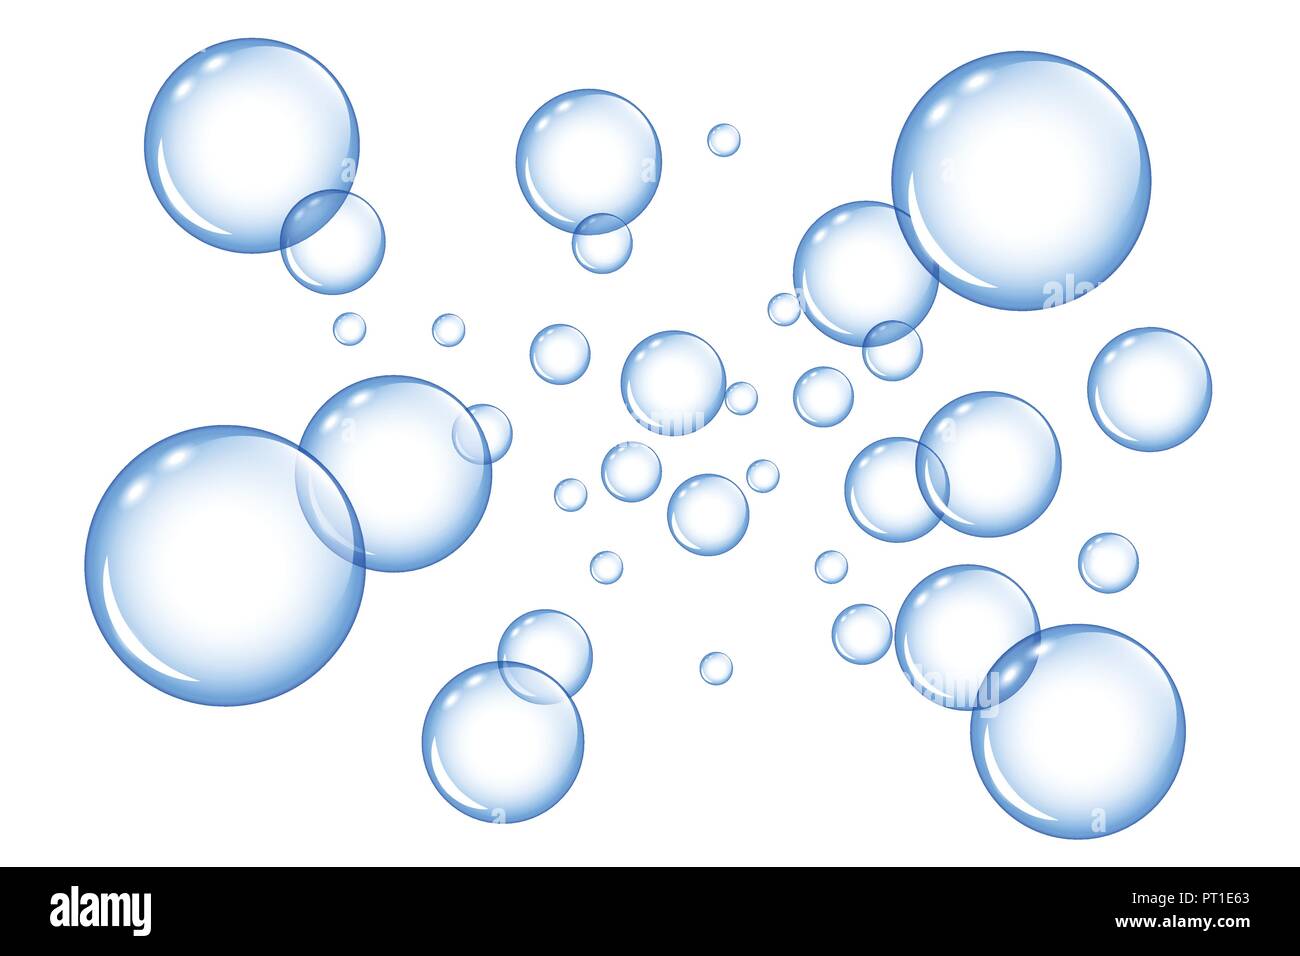 Blu bolle di sapone su sfondo bianco illustrazione vettoriale EPS10  Immagine e Vettoriale - Alamy